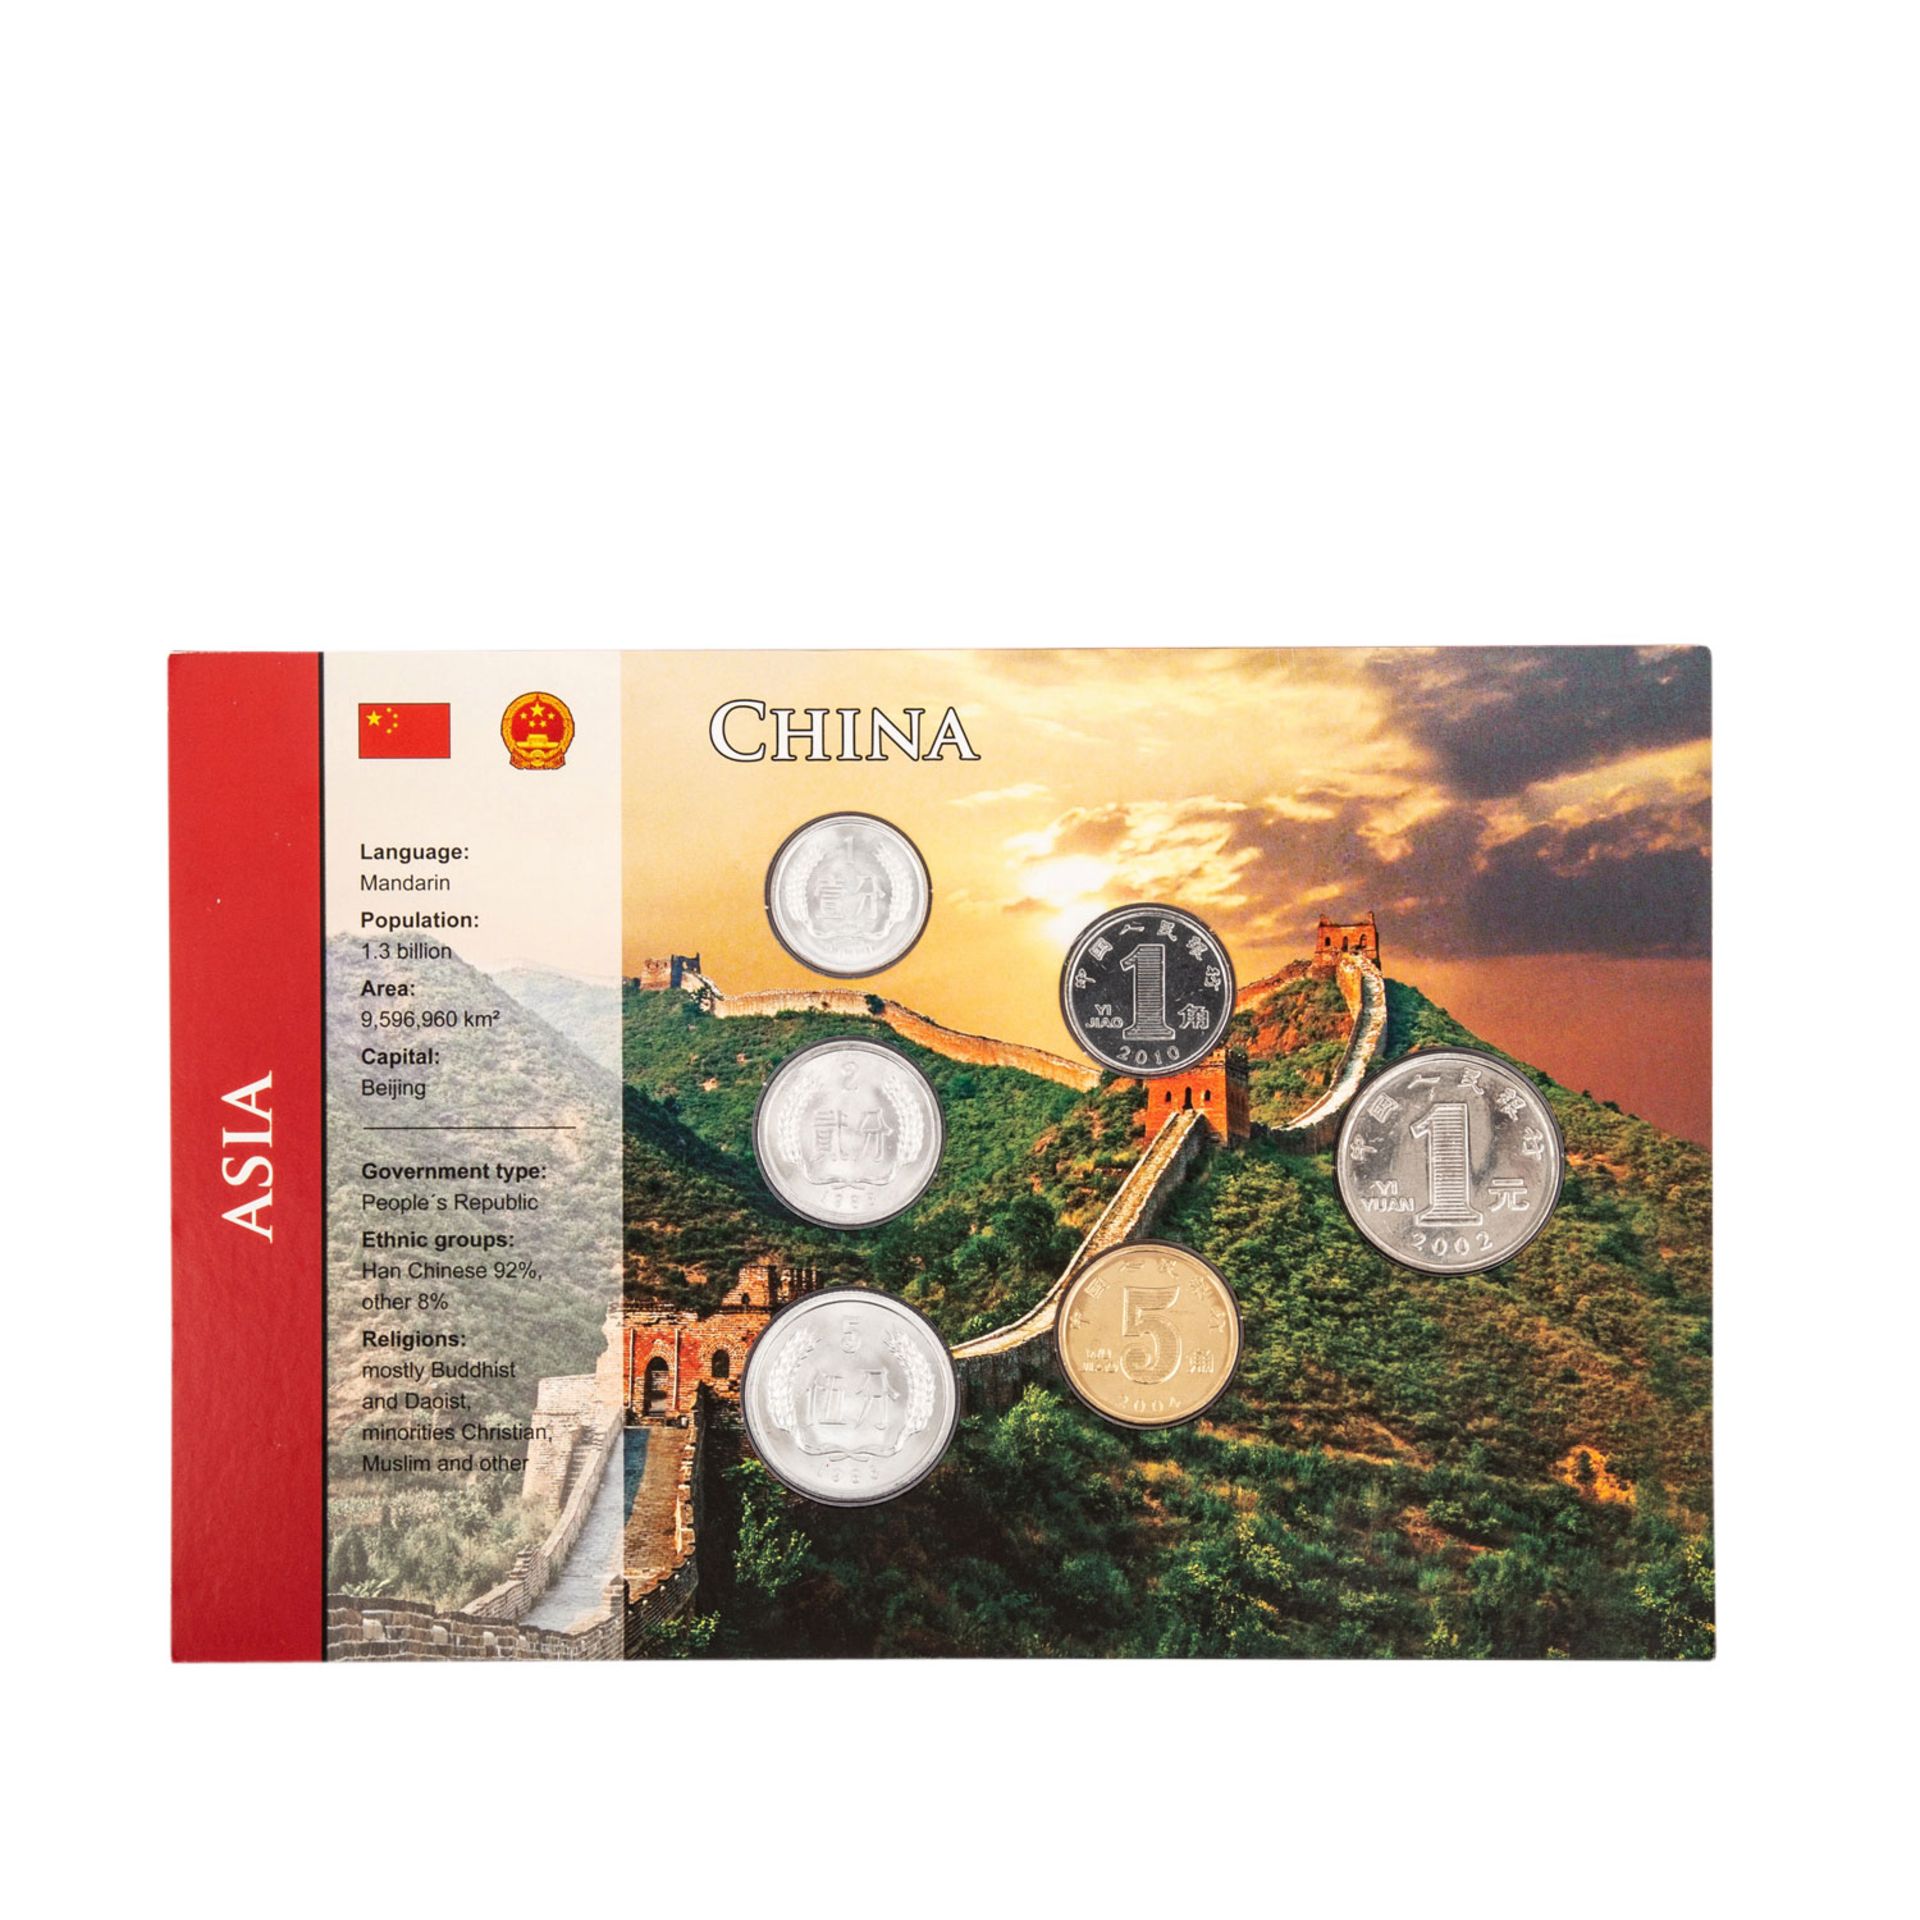 Volksrepublik China - Münzsatz zu 1,68 Yuan, im Einzelnen bestehend aus 1 Yuan 2002, 5 Jiao 2004, 1